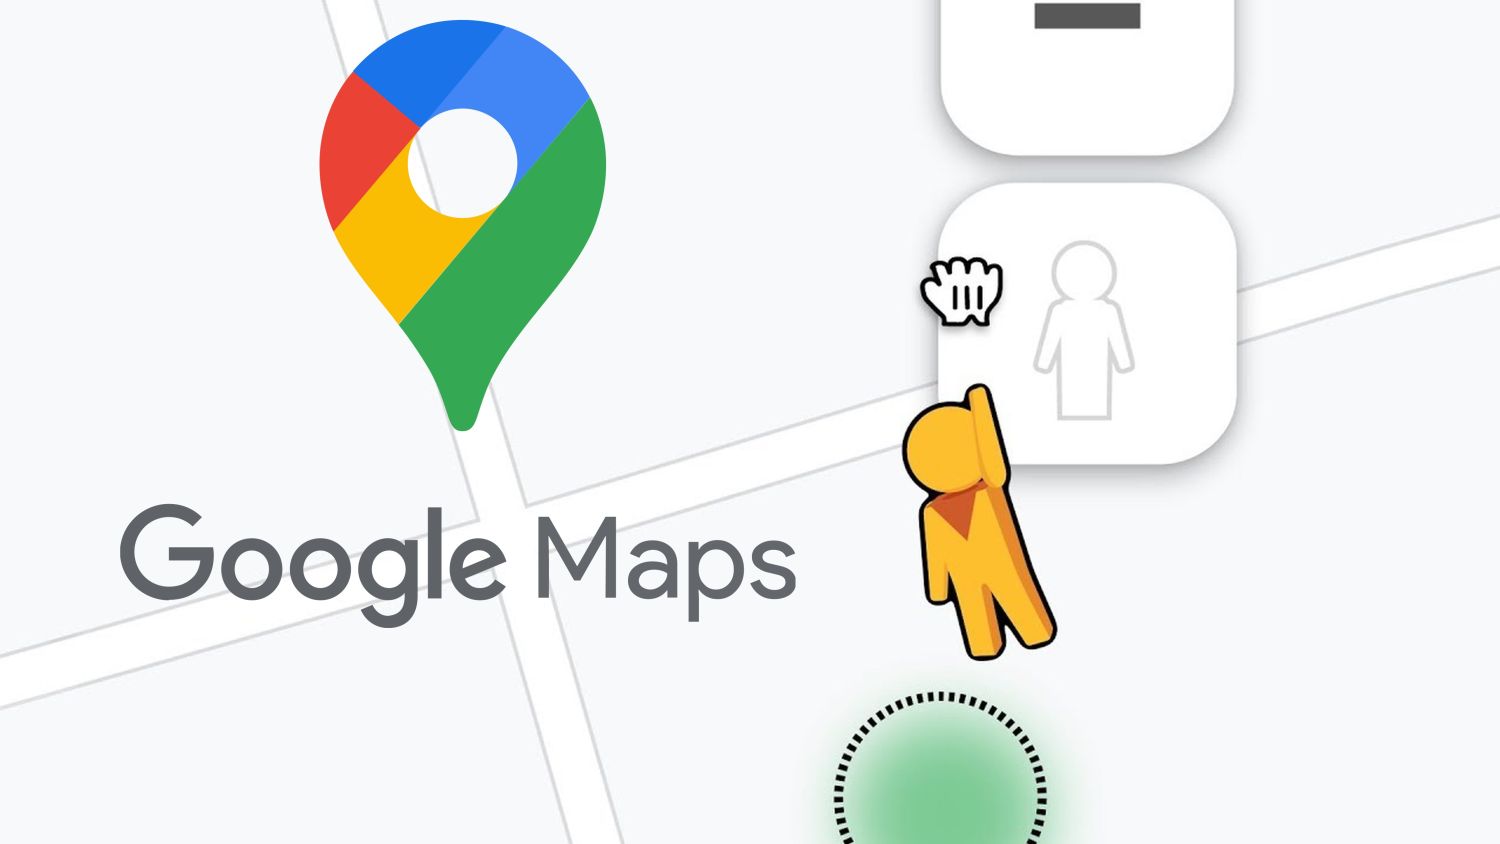 Logo Google Maps Street View avec peg man